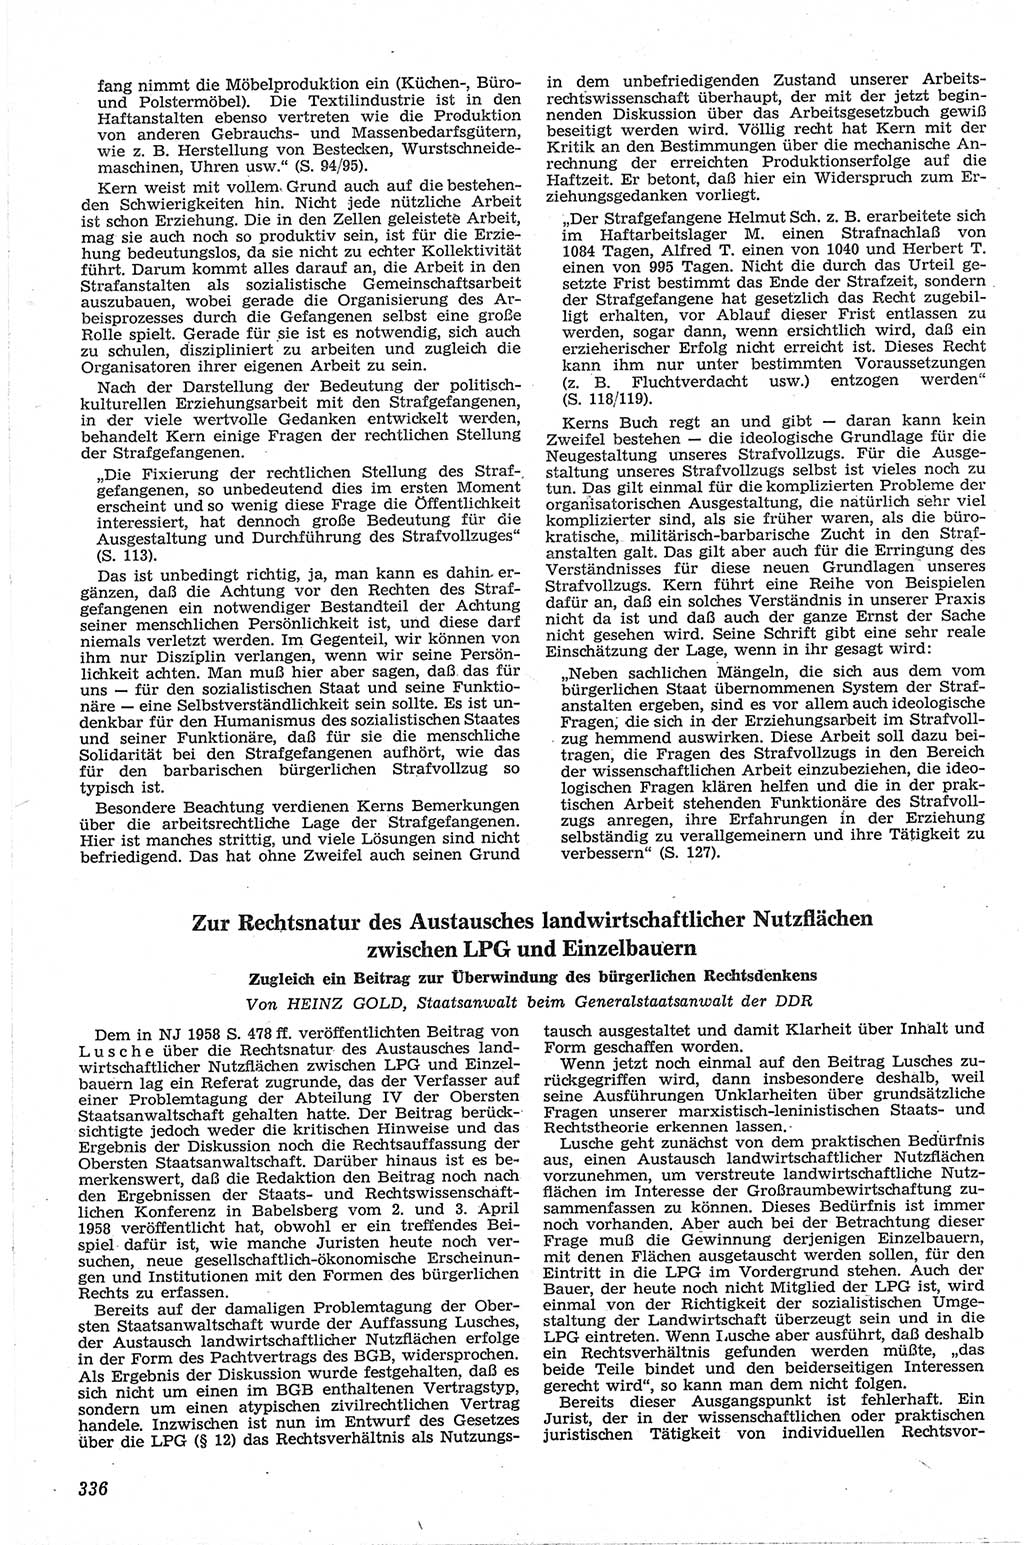 Neue Justiz (NJ), Zeitschrift für Recht und Rechtswissenschaft [Deutsche Demokratische Republik (DDR)], 13. Jahrgang 1959, Seite 336 (NJ DDR 1959, S. 336)